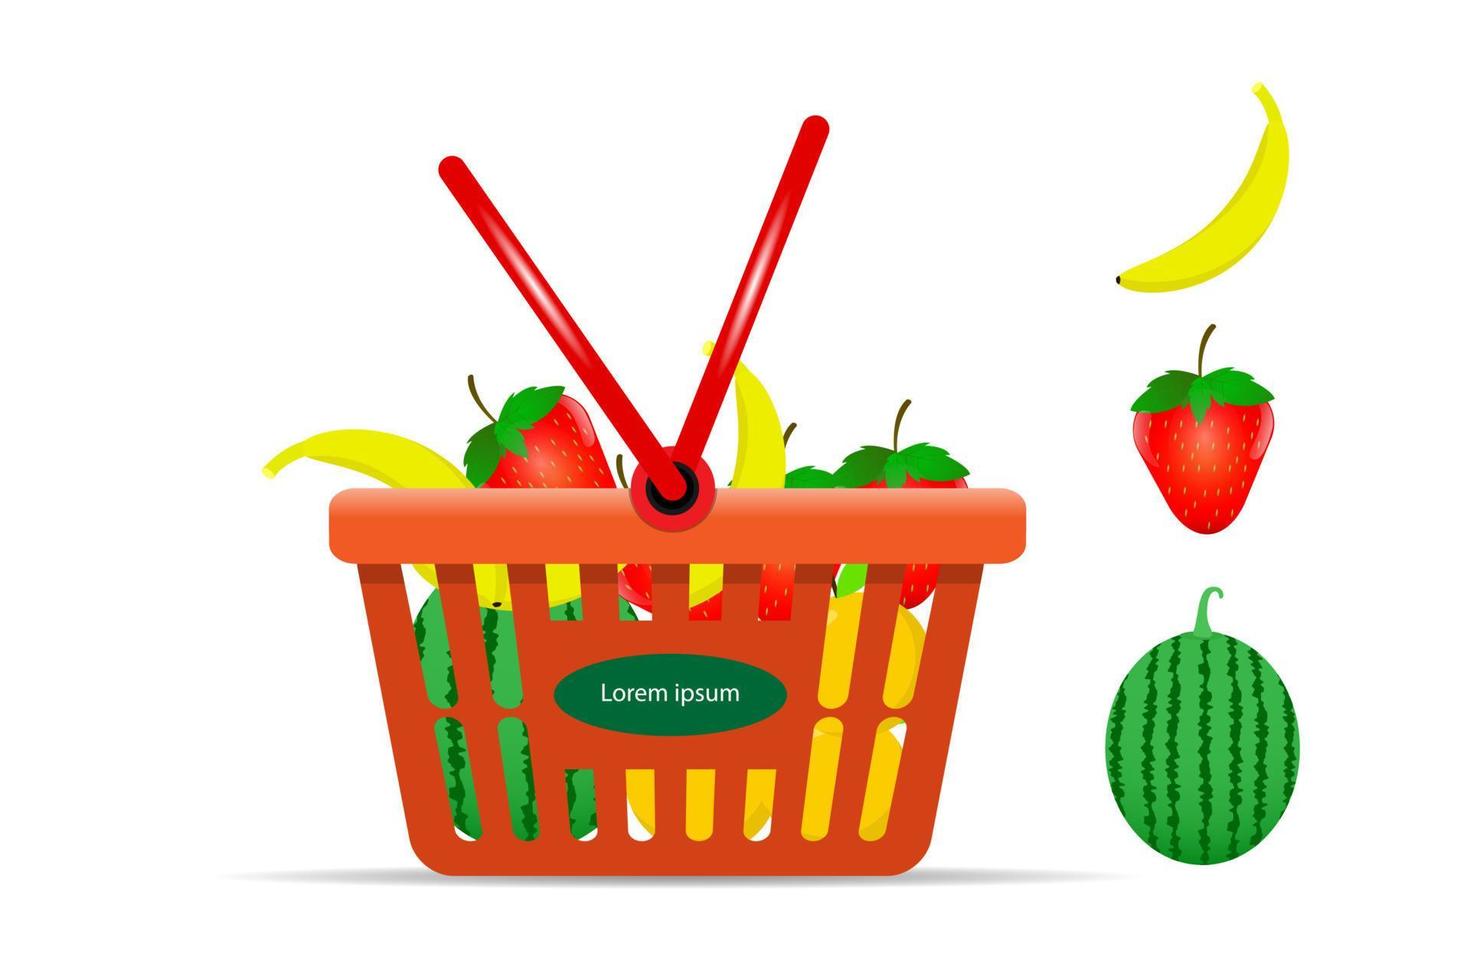 Einkaufswagen voller Früchte für den Online-Einkauf frischer Produkte vektor